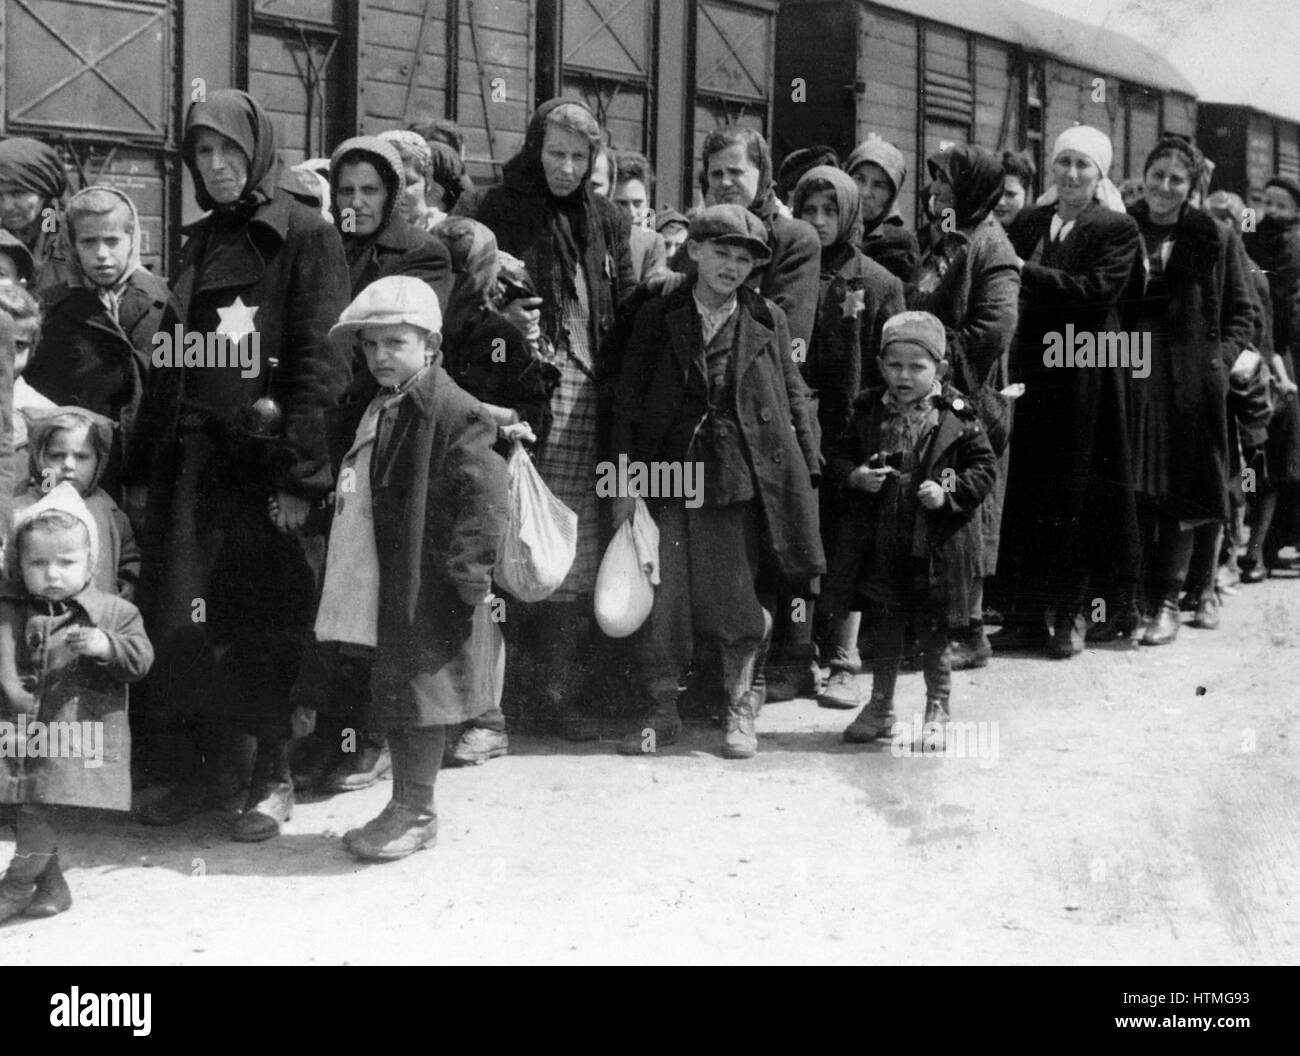 Ankunft eines Zuges mit Juden in Vernichtungslager Auschwitz in Polen deportiert. Auschwitz-Birkenau (1940-1945) war die größte der deutschen Konzentrations-und Vernichtungslager. 1,1 Millionen Menschen, sind 90 Prozent von ihnen Juden gedacht, um dort gestorben Stockfoto